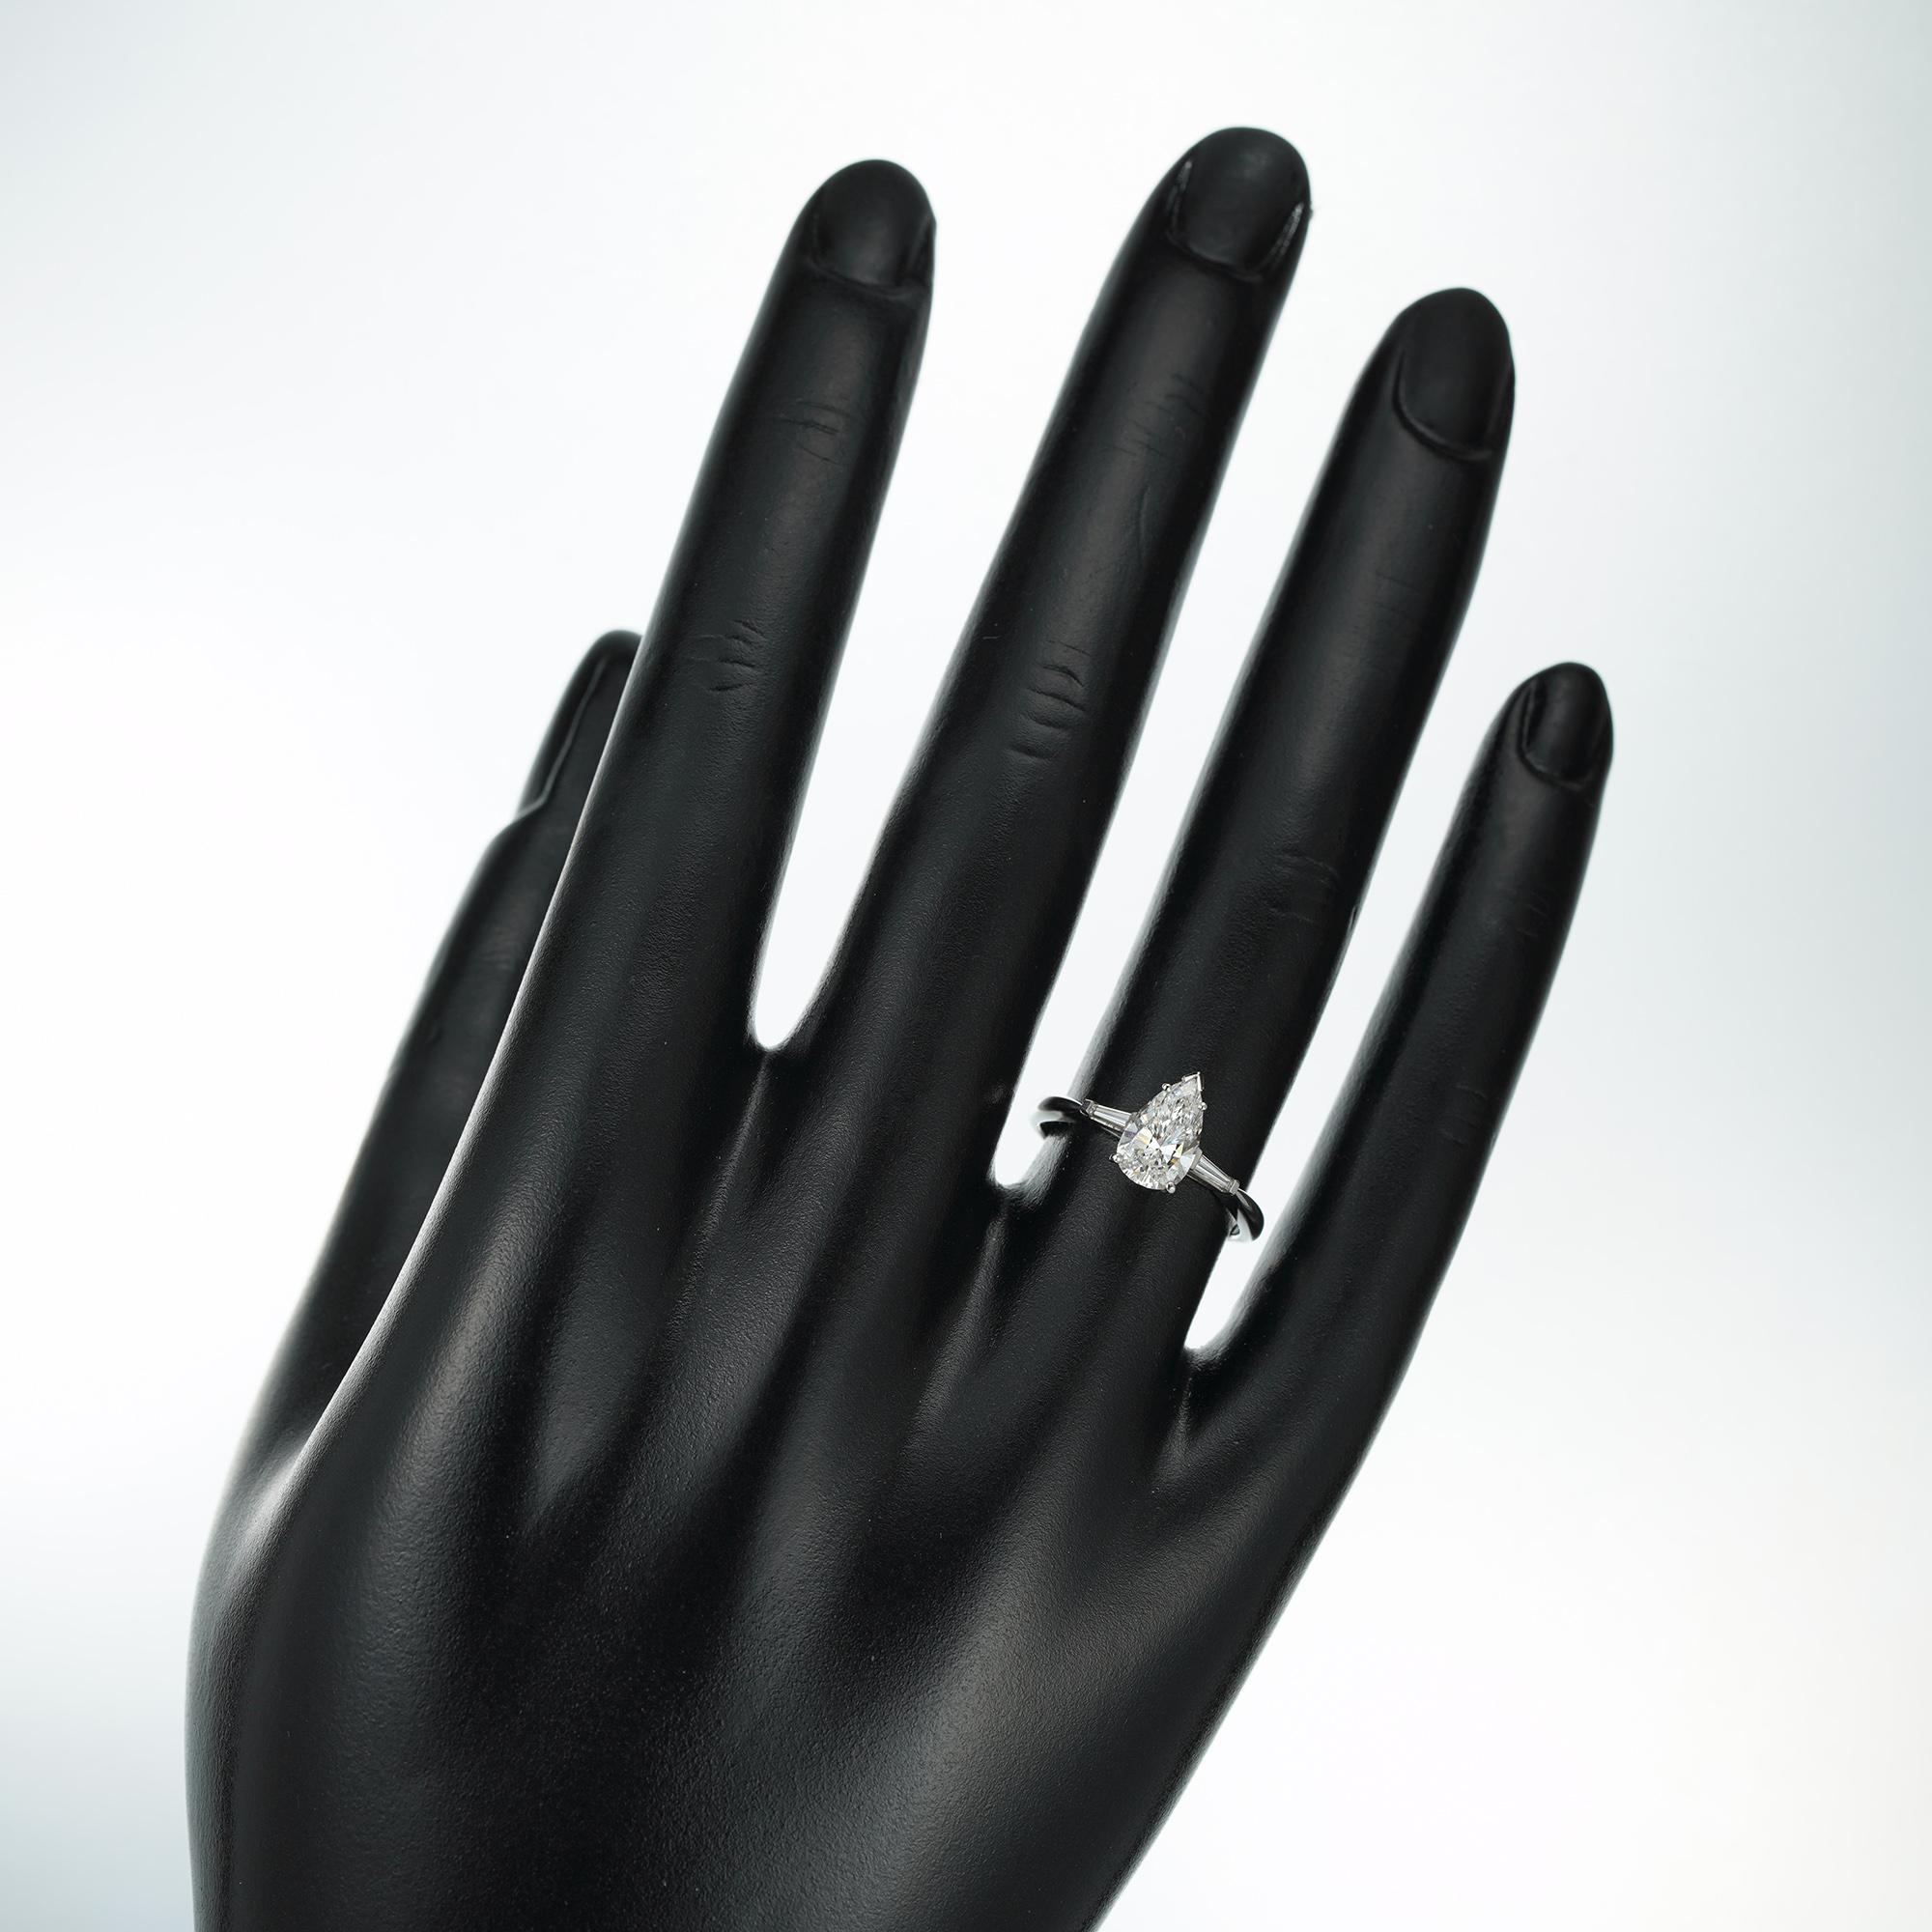 Women's or Men's Certified 1.06 Carat Solitaire Diamond Ring